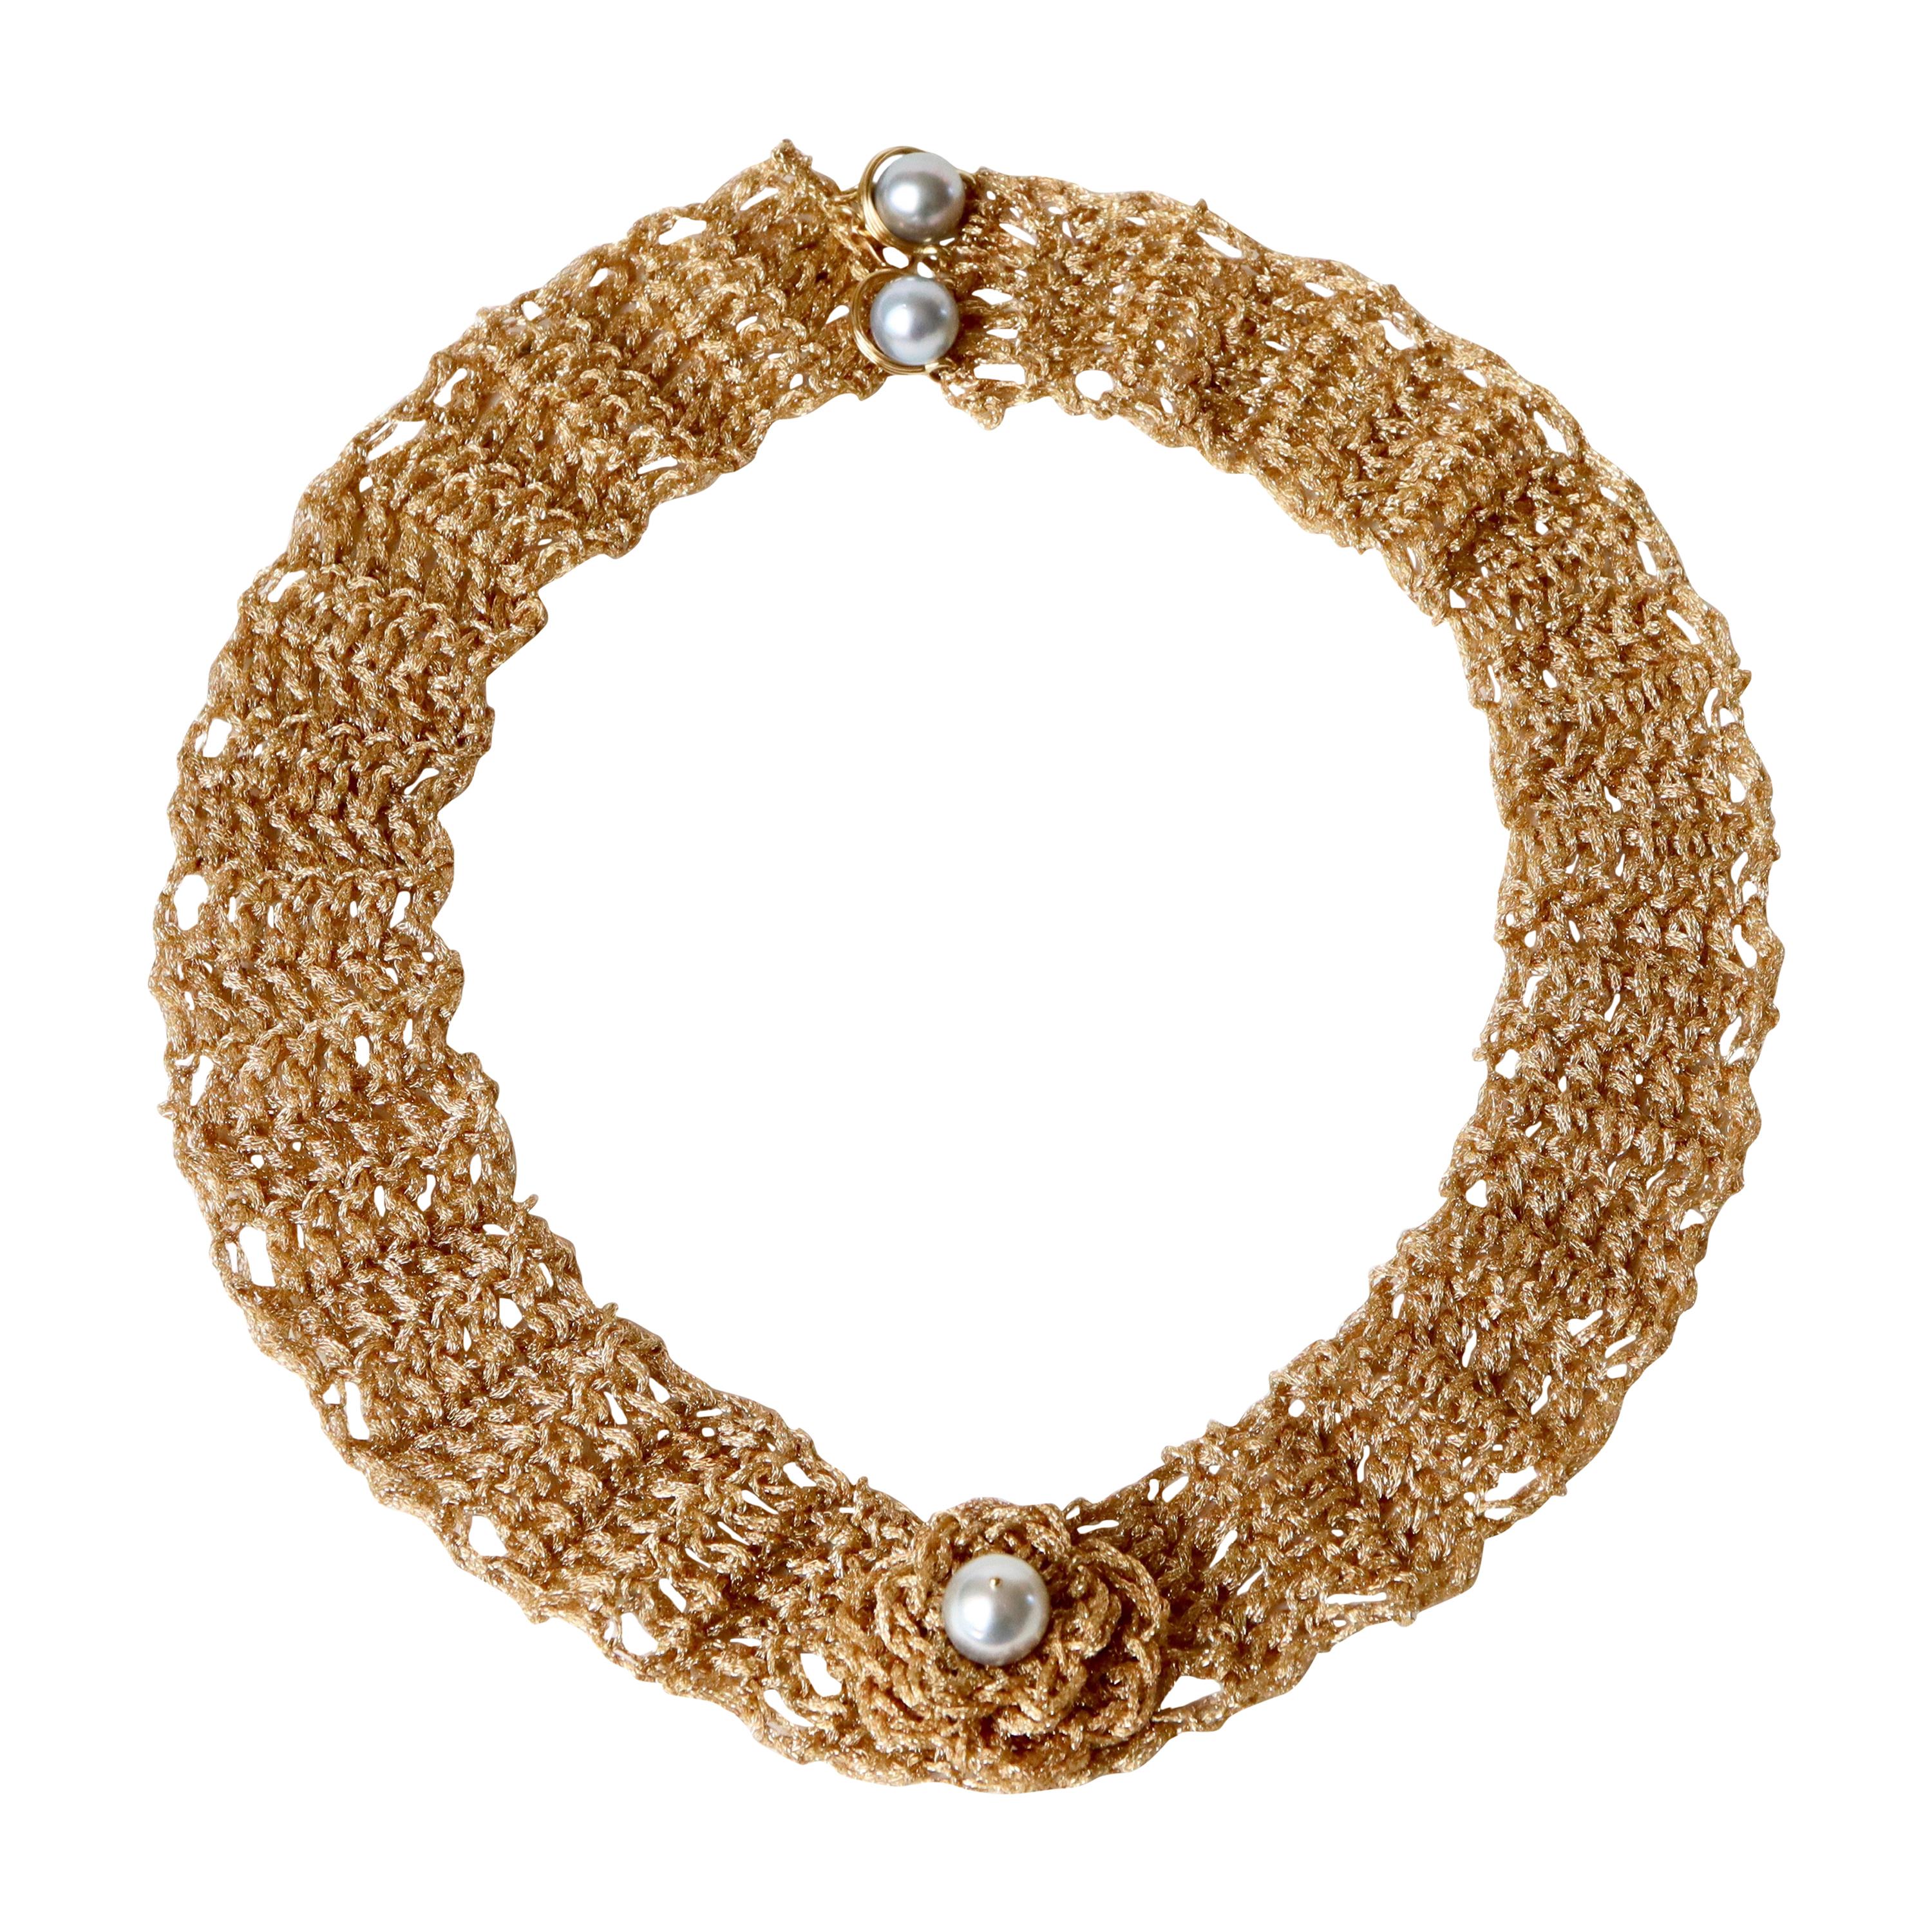 Halskette aus 18 Karat Gold mit gestricktem Goldfaden, geschmückt mit Perlen